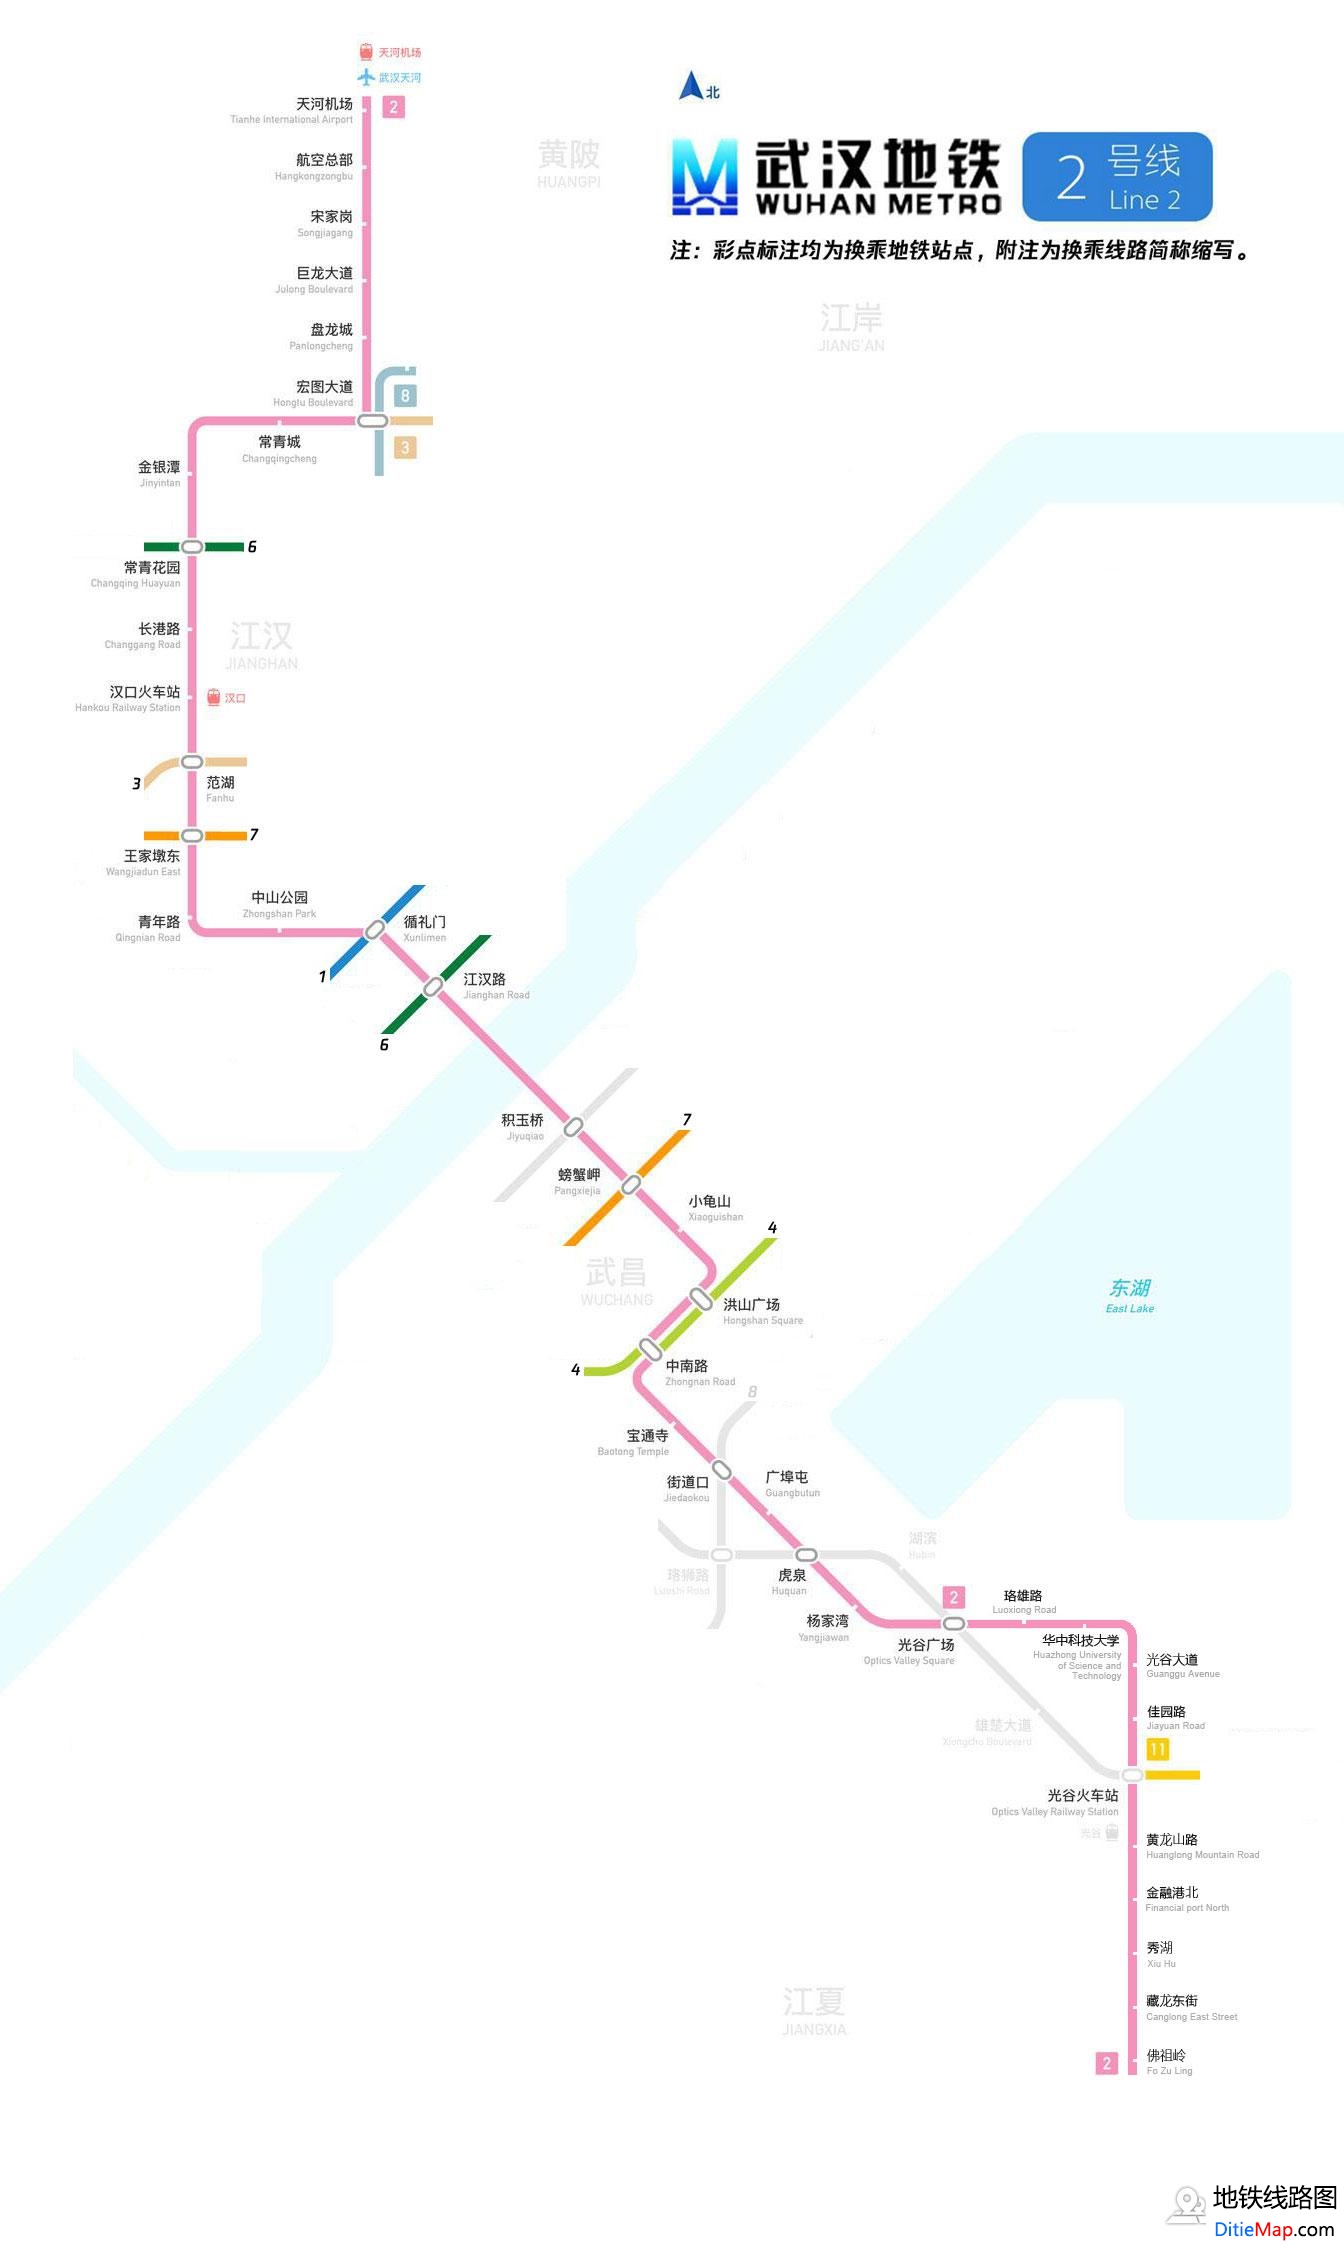 武汉地铁2号线查询 武汉地铁2号线运营时间 武汉地铁2号线线路图 武汉